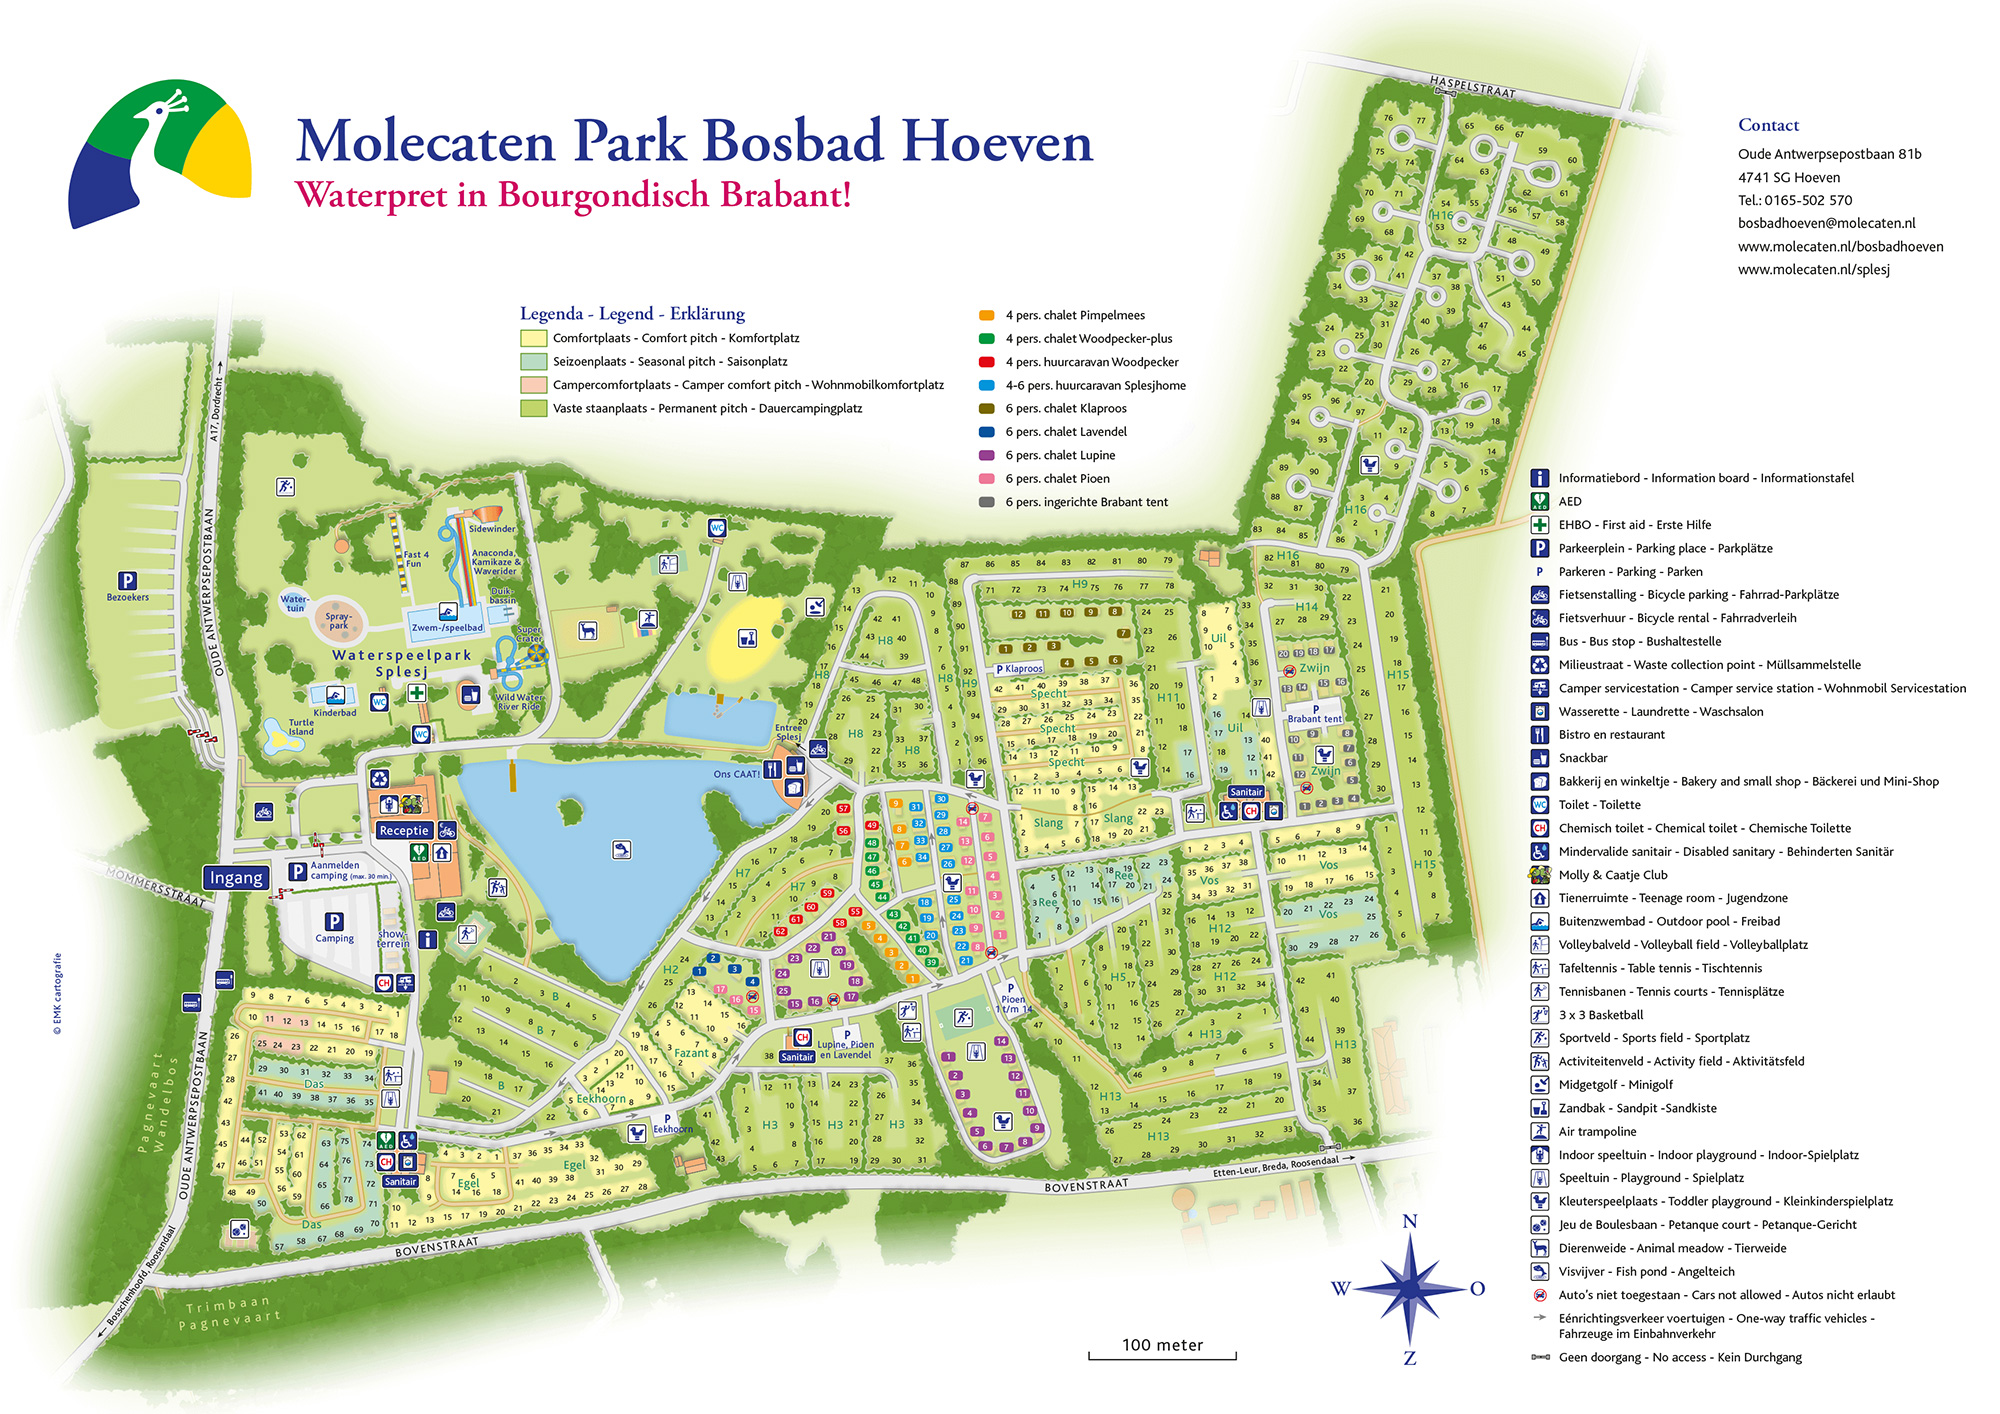 Campsite map Molecaten Park Bosbad Hoeven